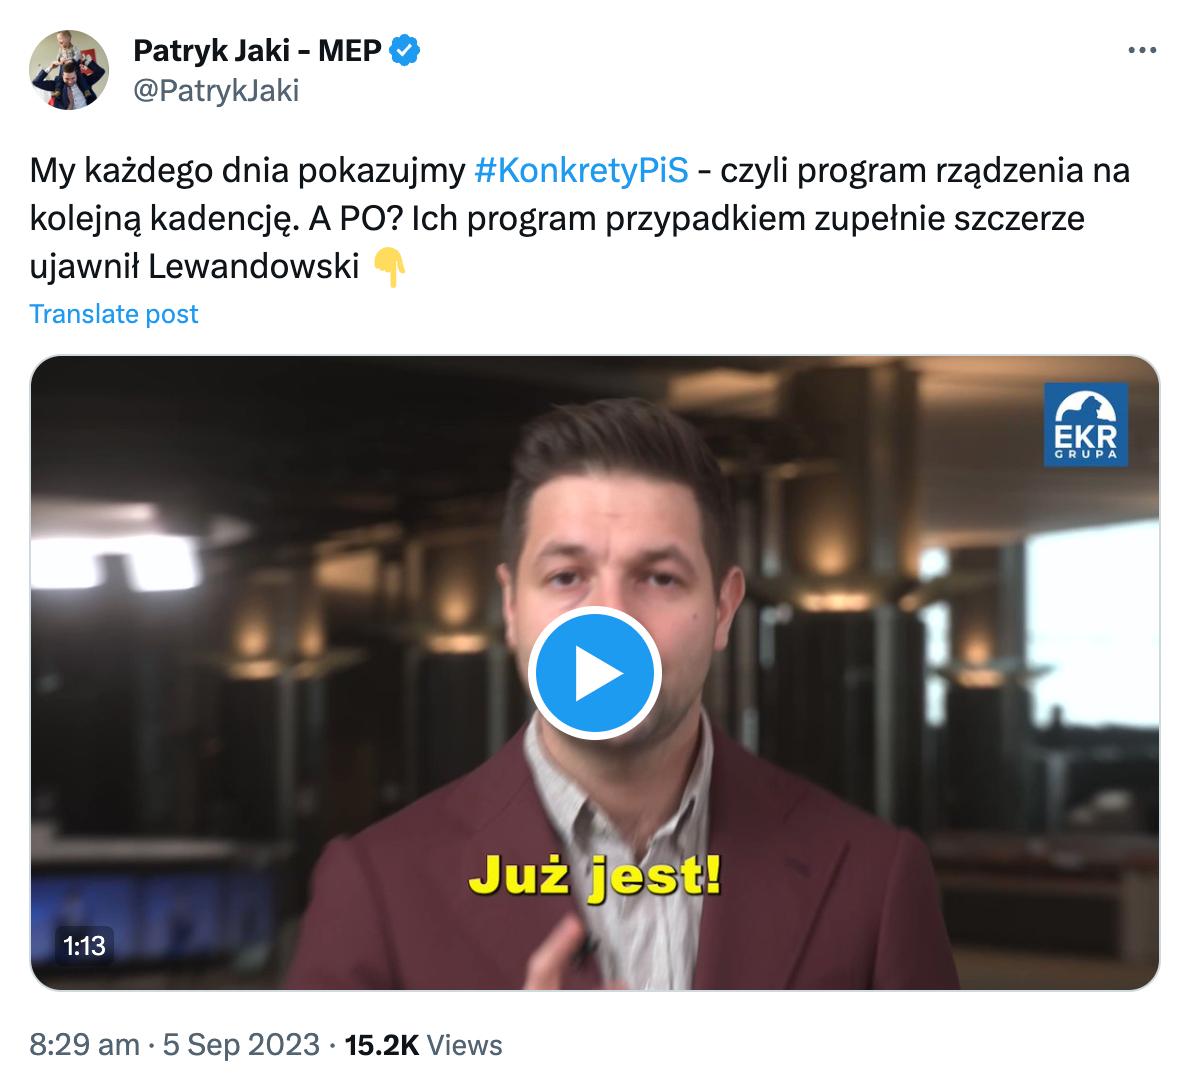 Zrzut ekranu z twitterowym wpisem Patryka Jakiego z jednym z wideo. W komentarzu europoseł używa hasztaga Konkrety PiS.